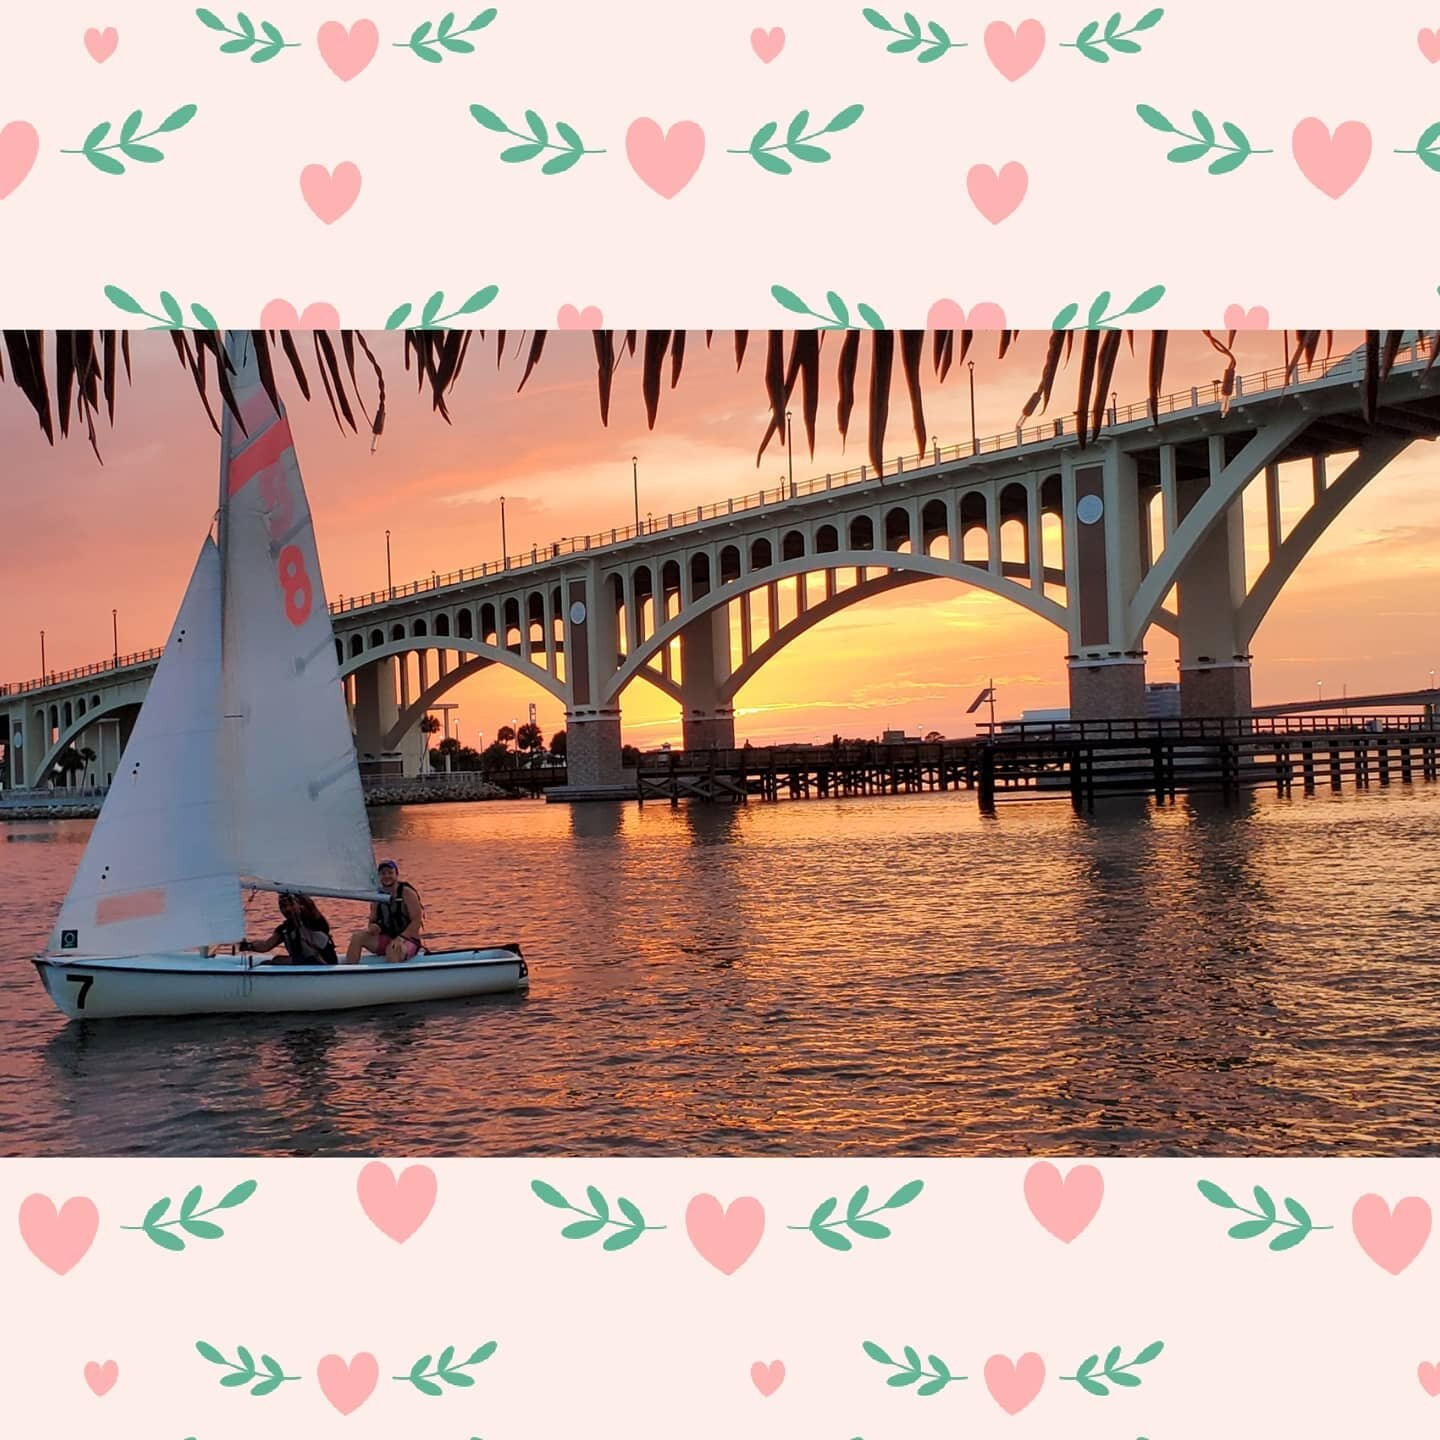 This never gets old 😍
.
Come check out our beautiful Florida sunsets 🌅 Visit CruisinTikisDaytonaBeach.com to book your sunset cruise 
.
#tikilife #floridasunsets #tododaytonabeach #halifaxriver #tikibar #caribbeanjacksdaytona #visitflorida #sunsetl